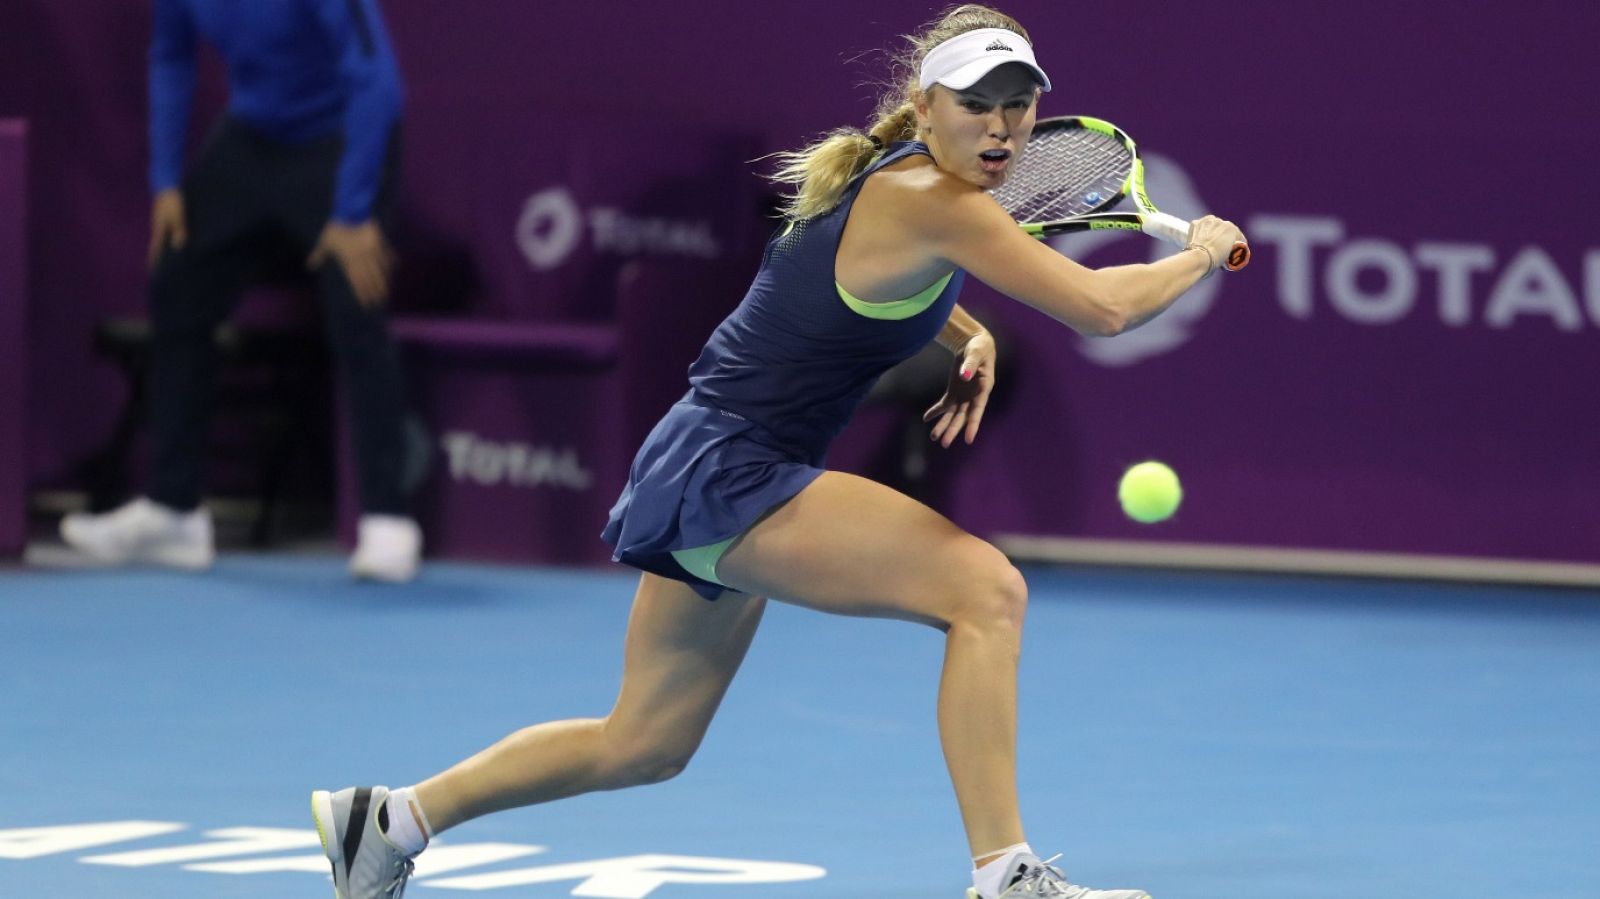 Tenis - WTA Torneo Doha (Catar) 1/4 Final: C. Wozniacki - A. Kerber